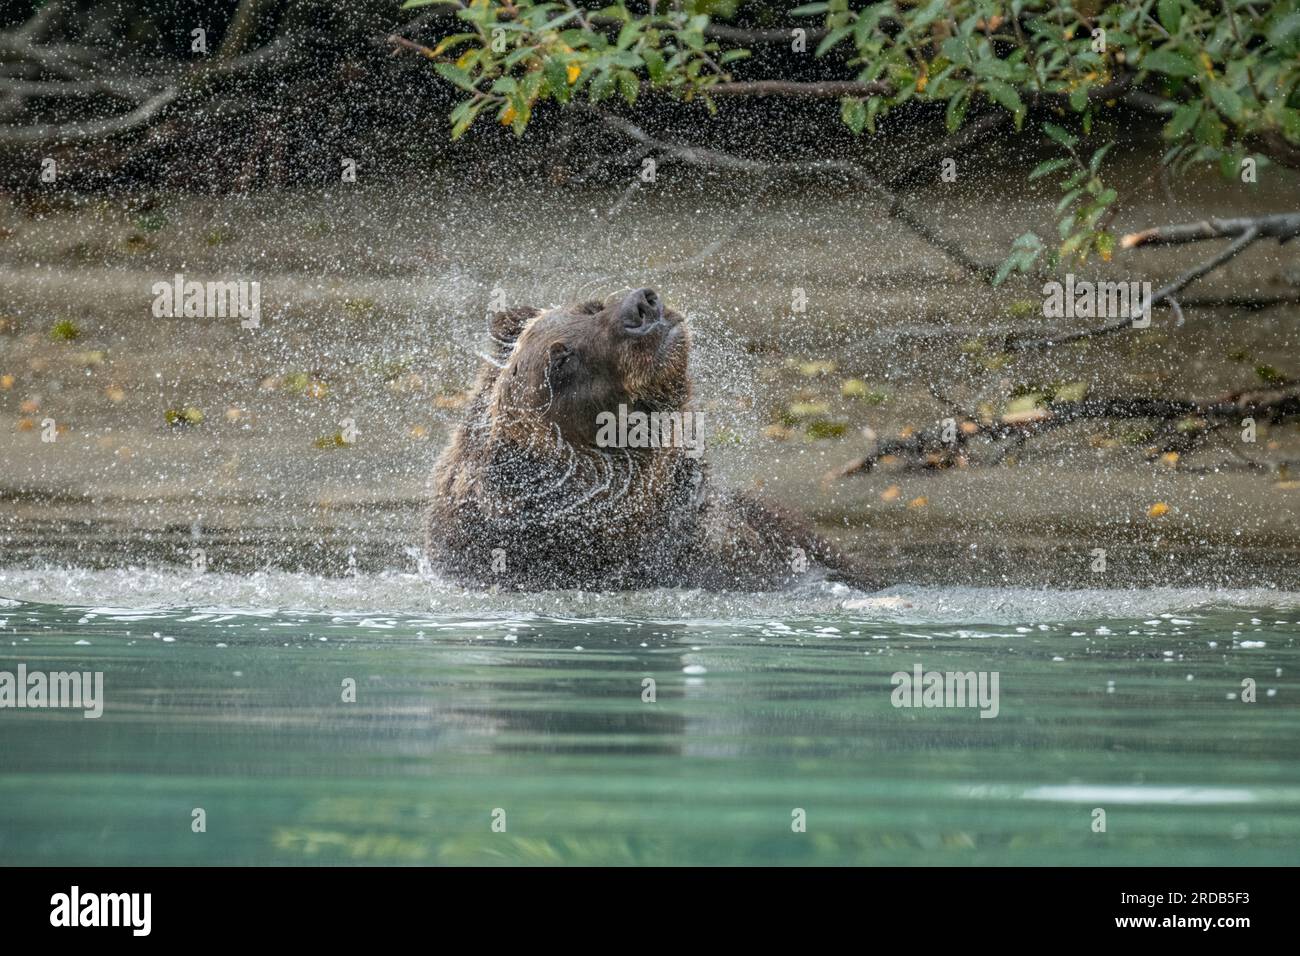 L'orso ha un mantello spesso ed è adatto per la pesca. ALASKA; USA: Le fotografie MAGICHE hanno mostrato un orso grizzly a grandezza naturale che spruzza in un fiume. In TH Foto Stock